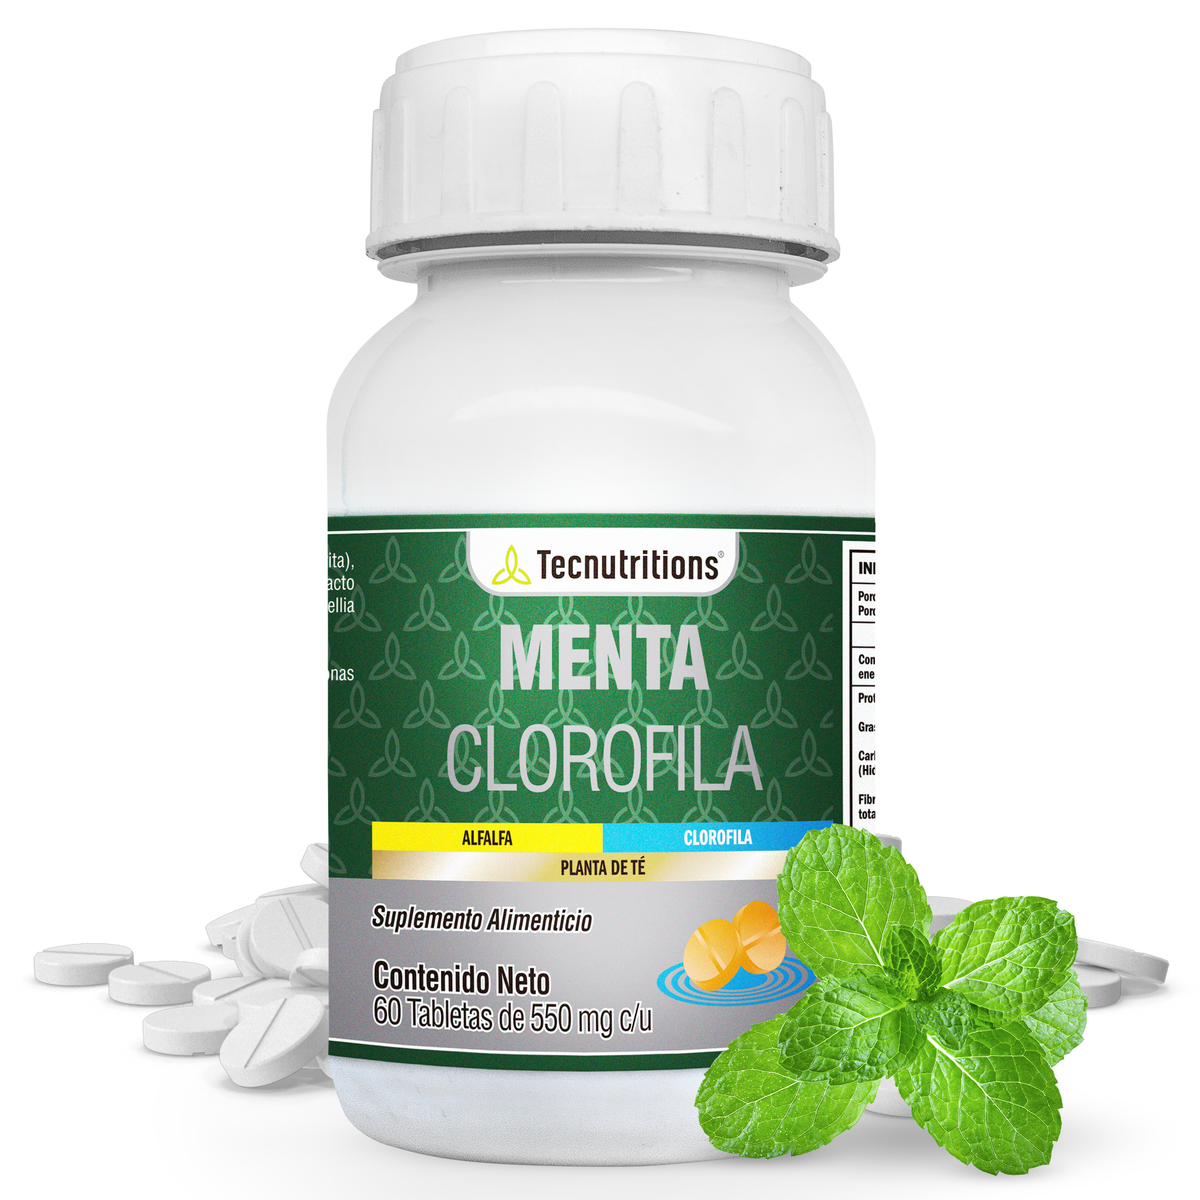 Suplemento alimenticio Menta Clorofila, 60 tabs, con menta, clorofila, estragón, apoyo para la salud sanguínea